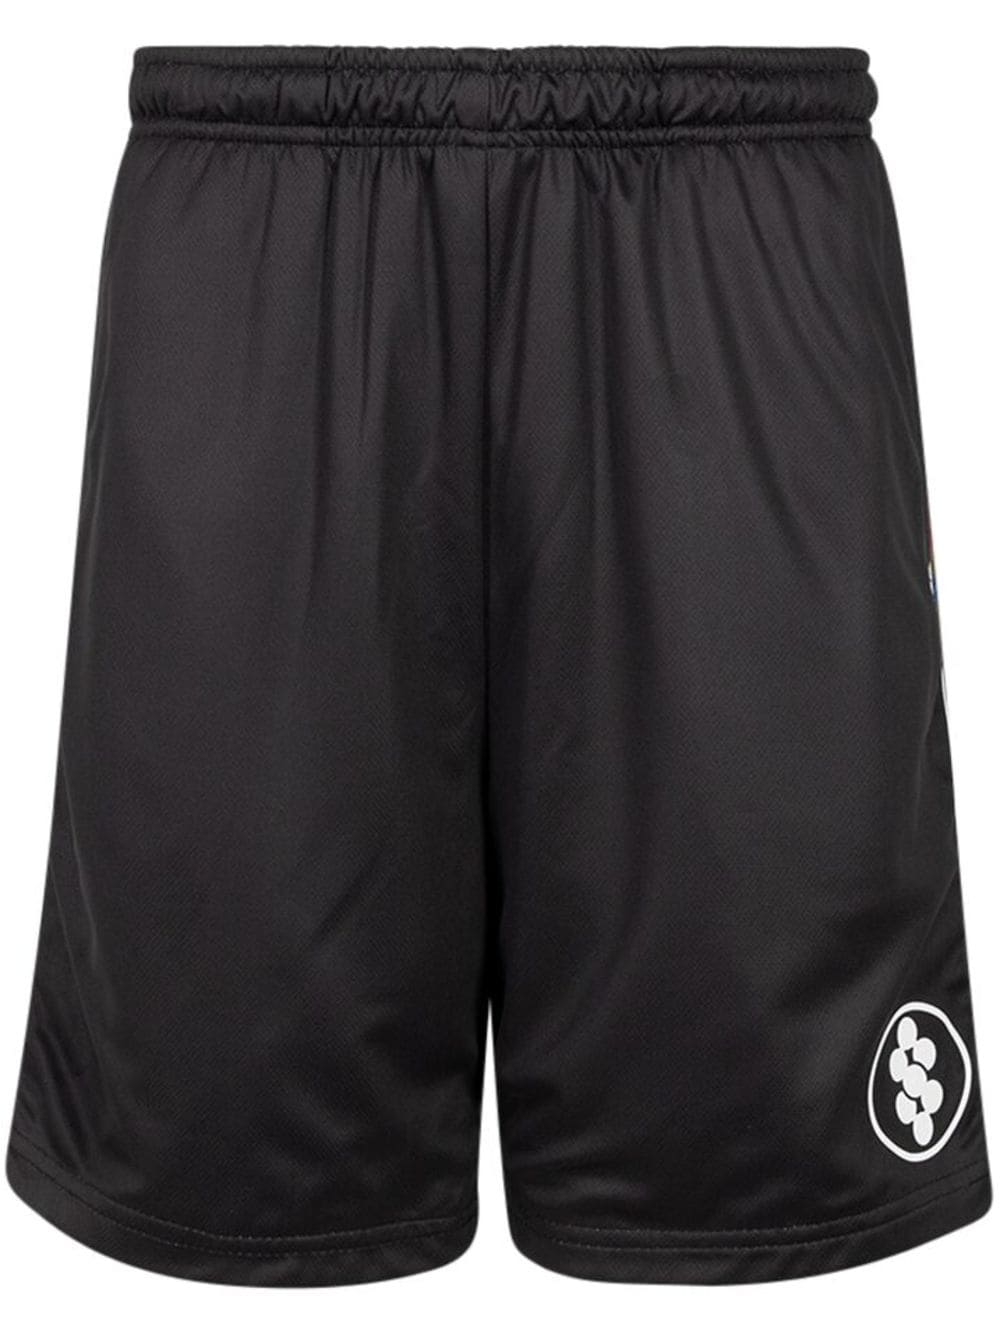 Supreme Feedback Soccer Printed Shorts - Farfetch